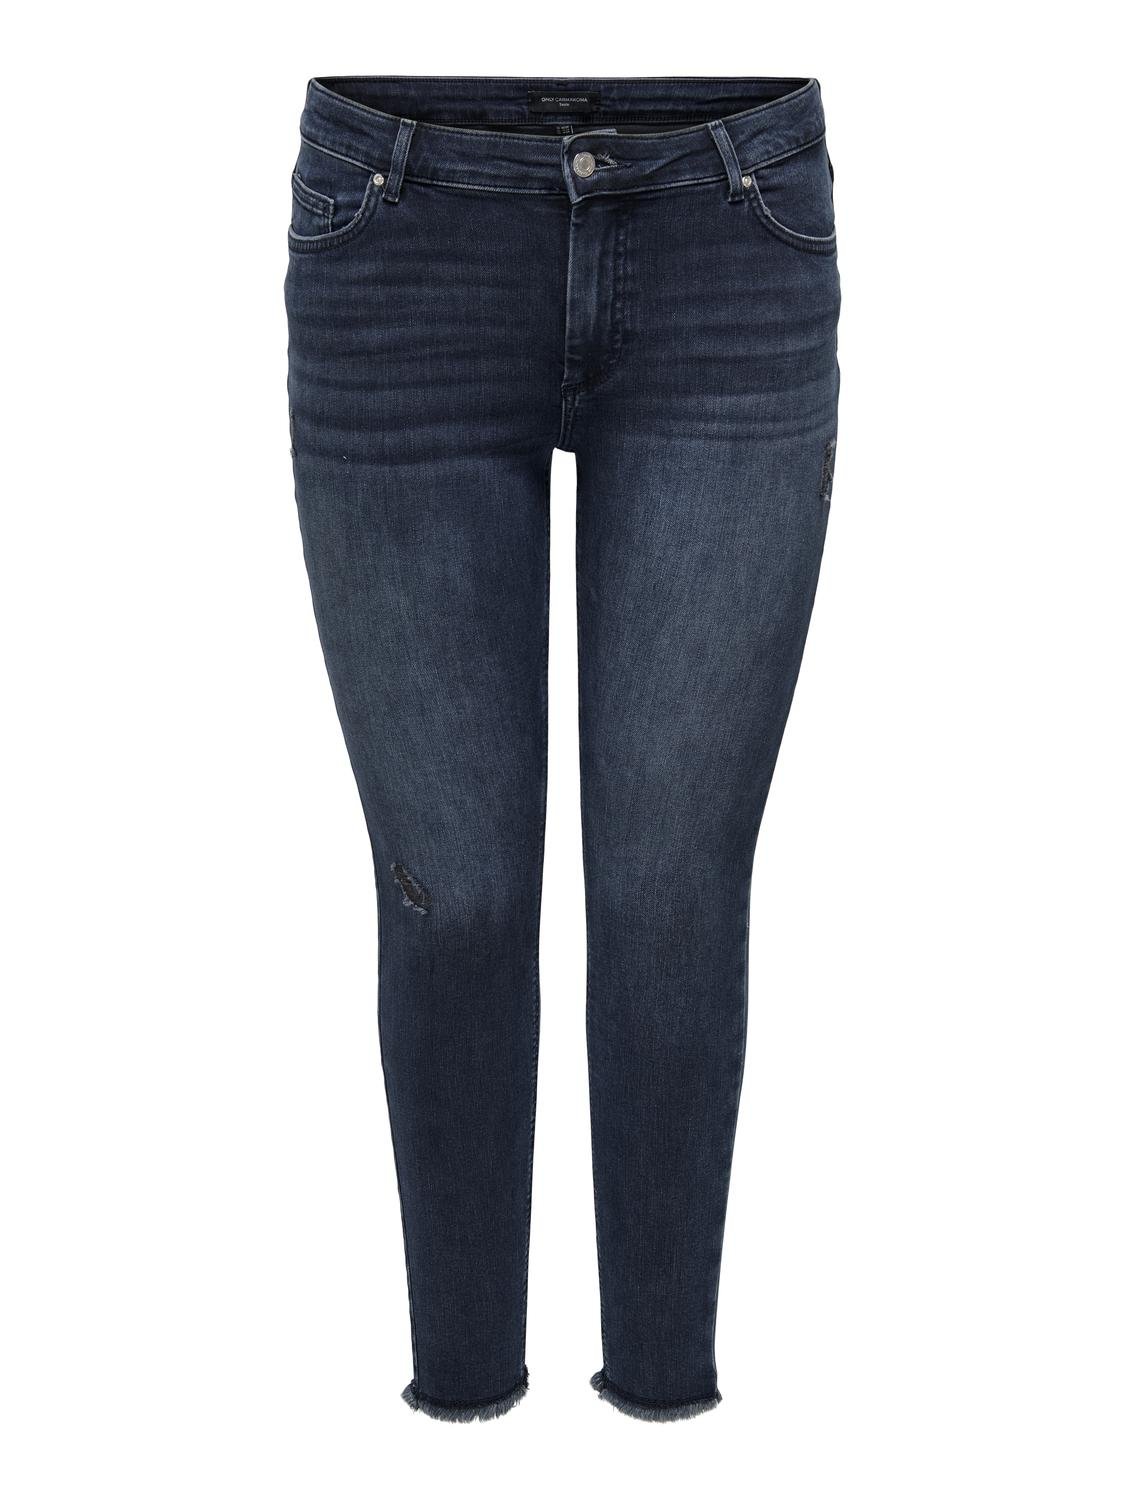 ONLY Skinny Fit Curve Jeans -Blue Black Denim - 15217934